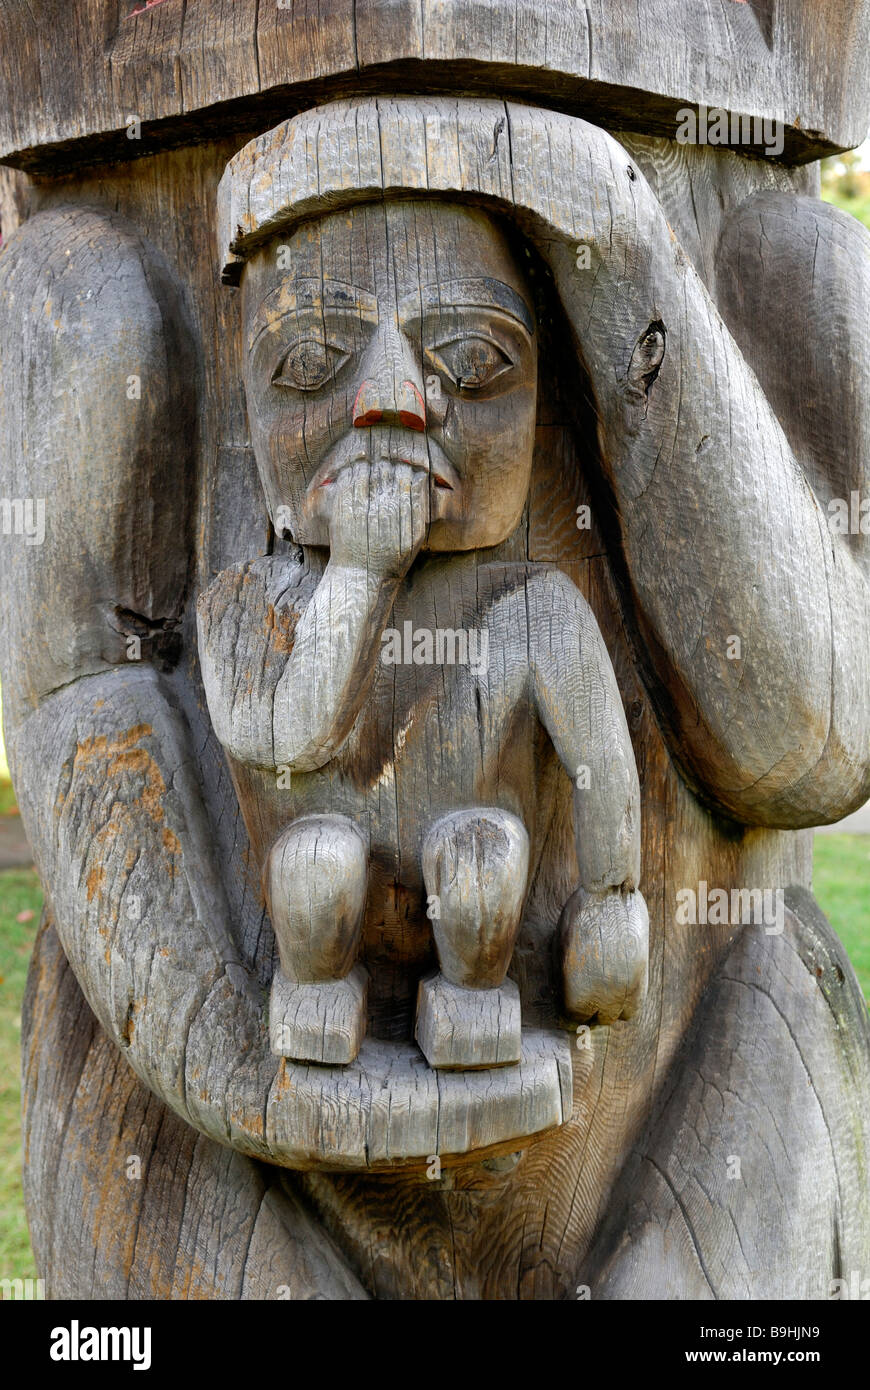 Totem indien, close-up, Royal BC Museum, Victoria, île de Vancouver, Colombie-Britannique, Canada, Amérique du Nord Banque D'Images